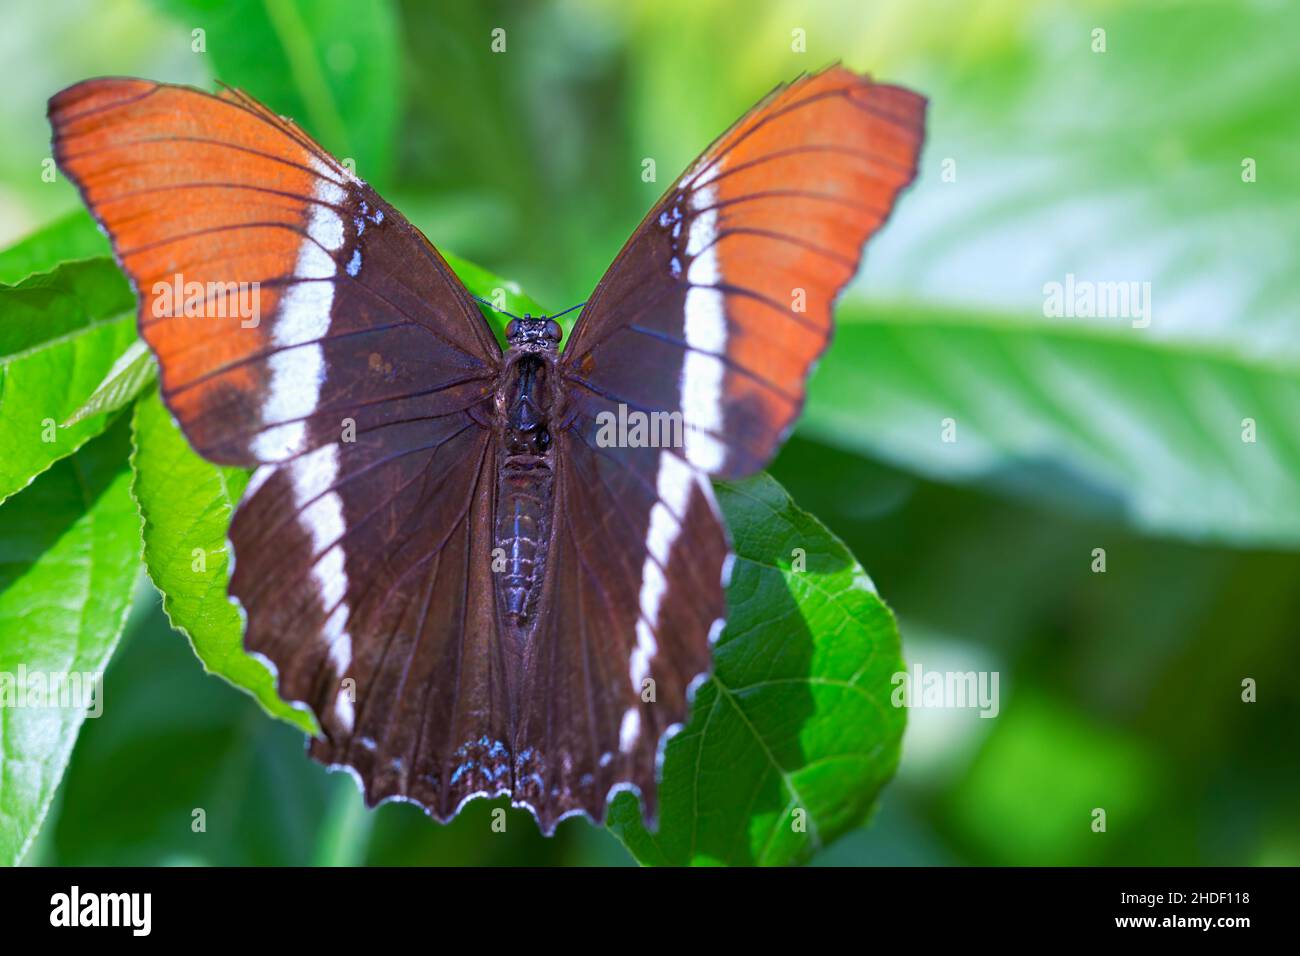 Macro fotografía de una mariposa de página oxidada sentada sobre una hoja en un parque de la ciudad de Cali, en el suroeste de las montañas andinas de Colombia. Foto de stock